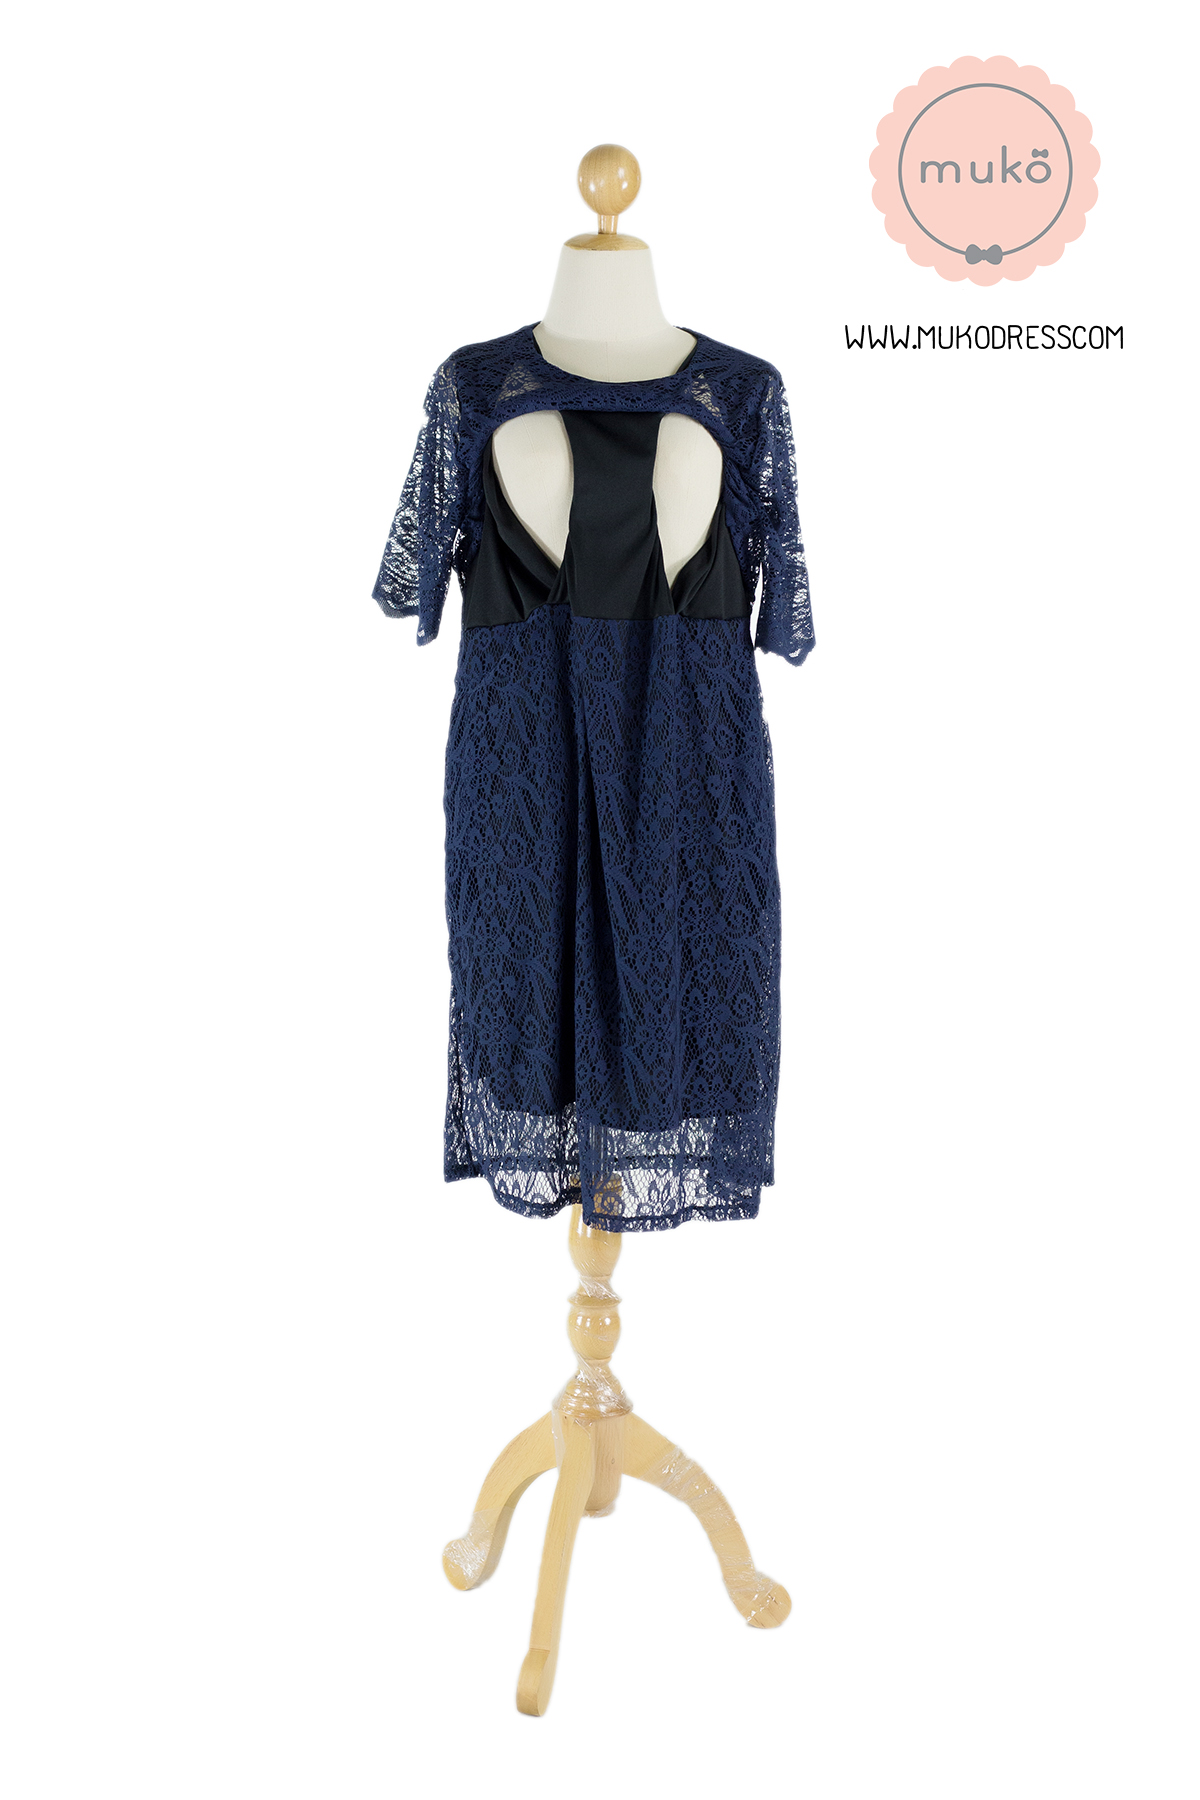 Muko Rosie Lace Dress เดรสเปิดให้นม คลุมท้อง DZ23-001 สีกรม